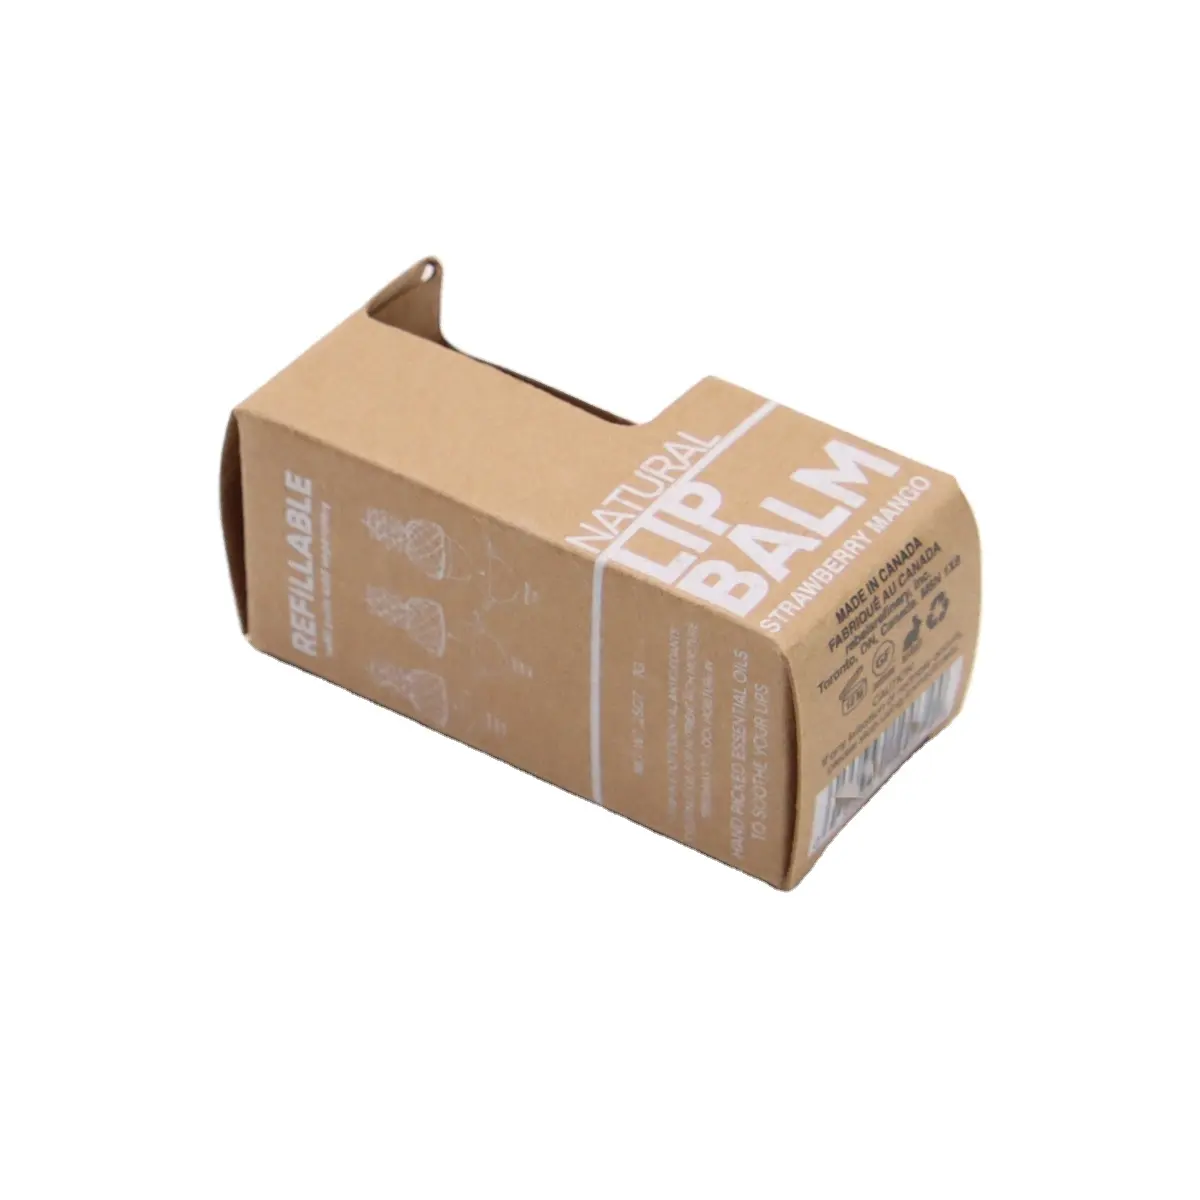 Kingwin özelleştirilmiş kozmetik kağıdı kutu renkli baskı kağıdı sabun kutusu ambalaj çekmece kutusu